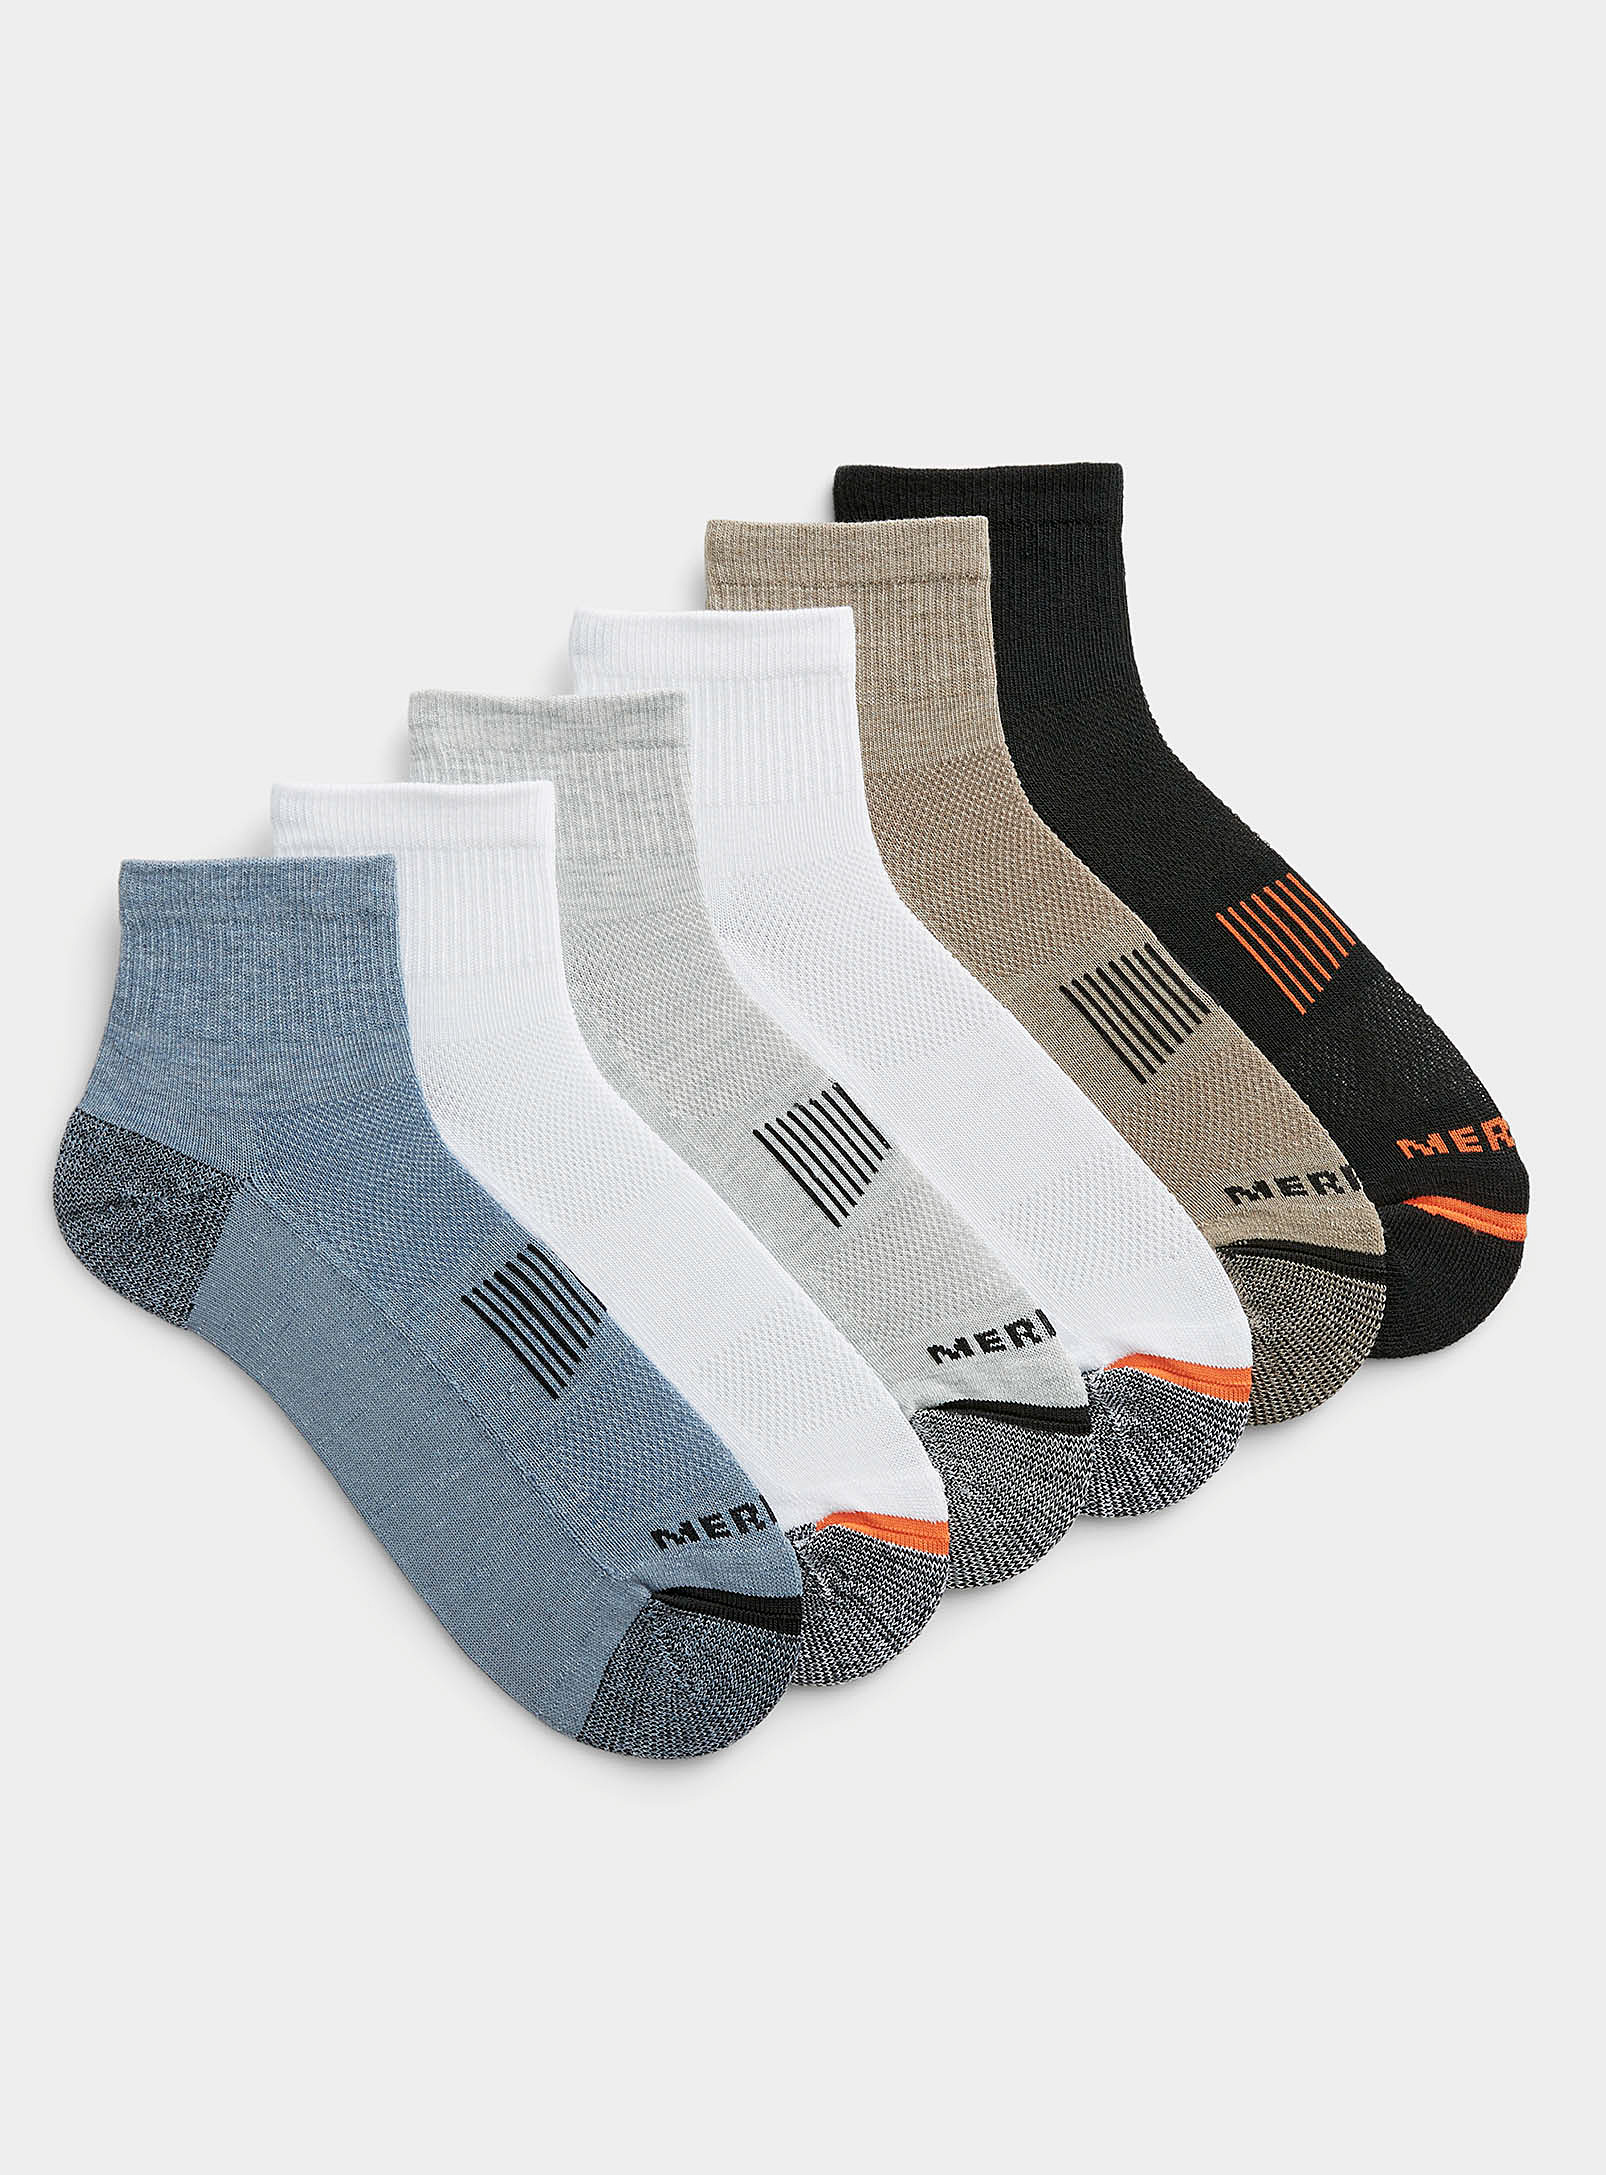 Merrell - Men's Reinforced ankle socks 6-pack